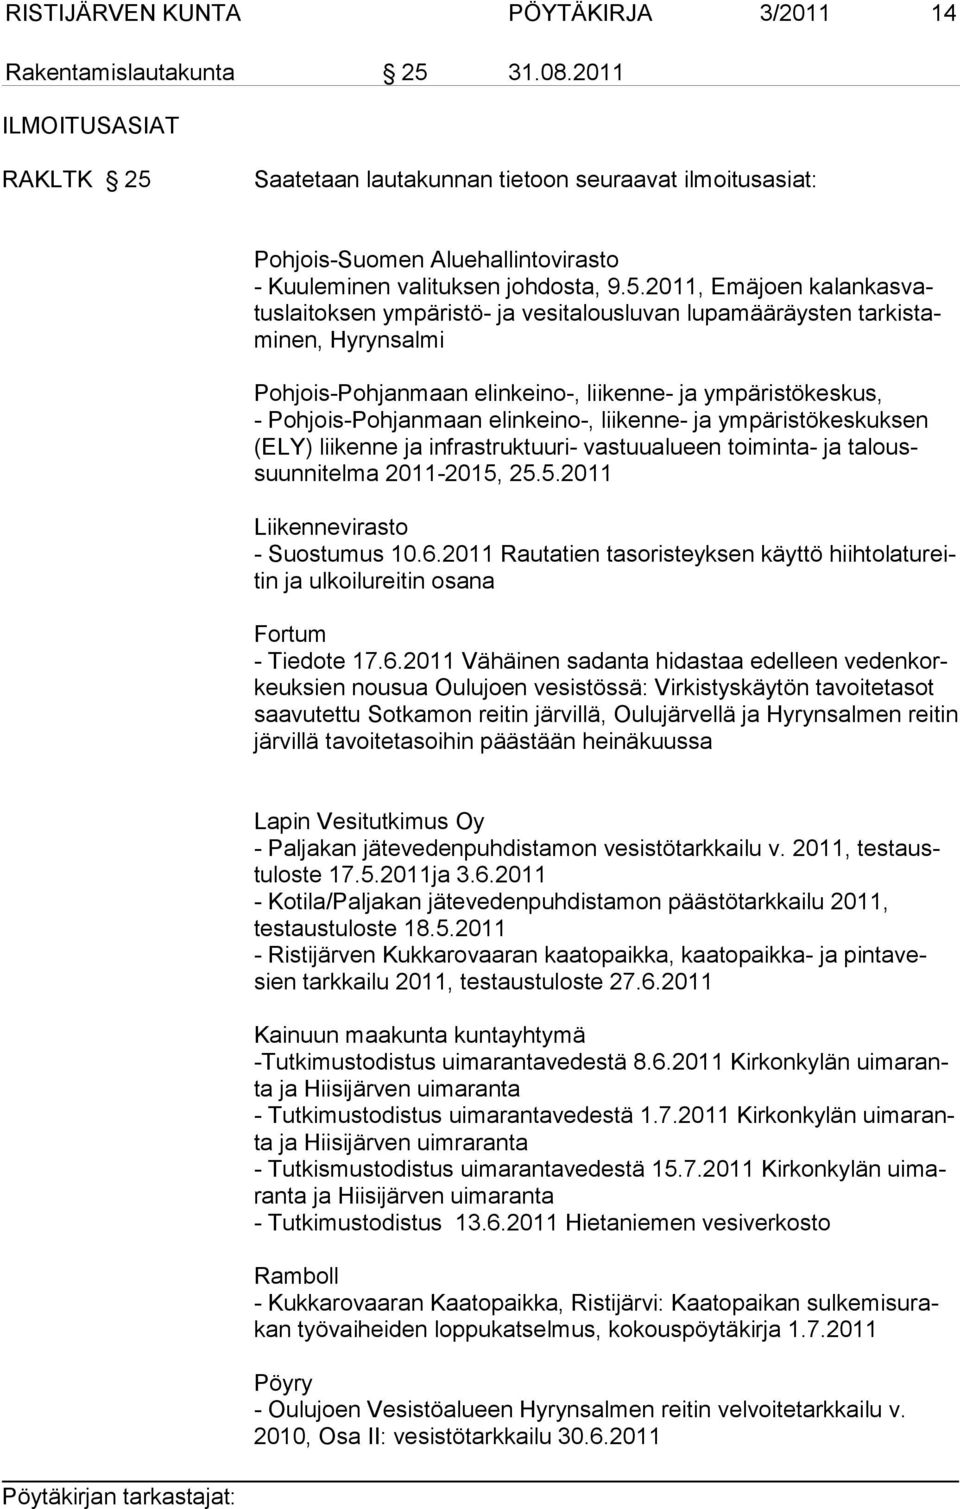 Saatetaan lautakunnan tietoon seuraavat ilmoitusasiat: Pohjois-Suomen Aluehallintovirasto - Kuuleminen valituksen johdosta, 9.5.